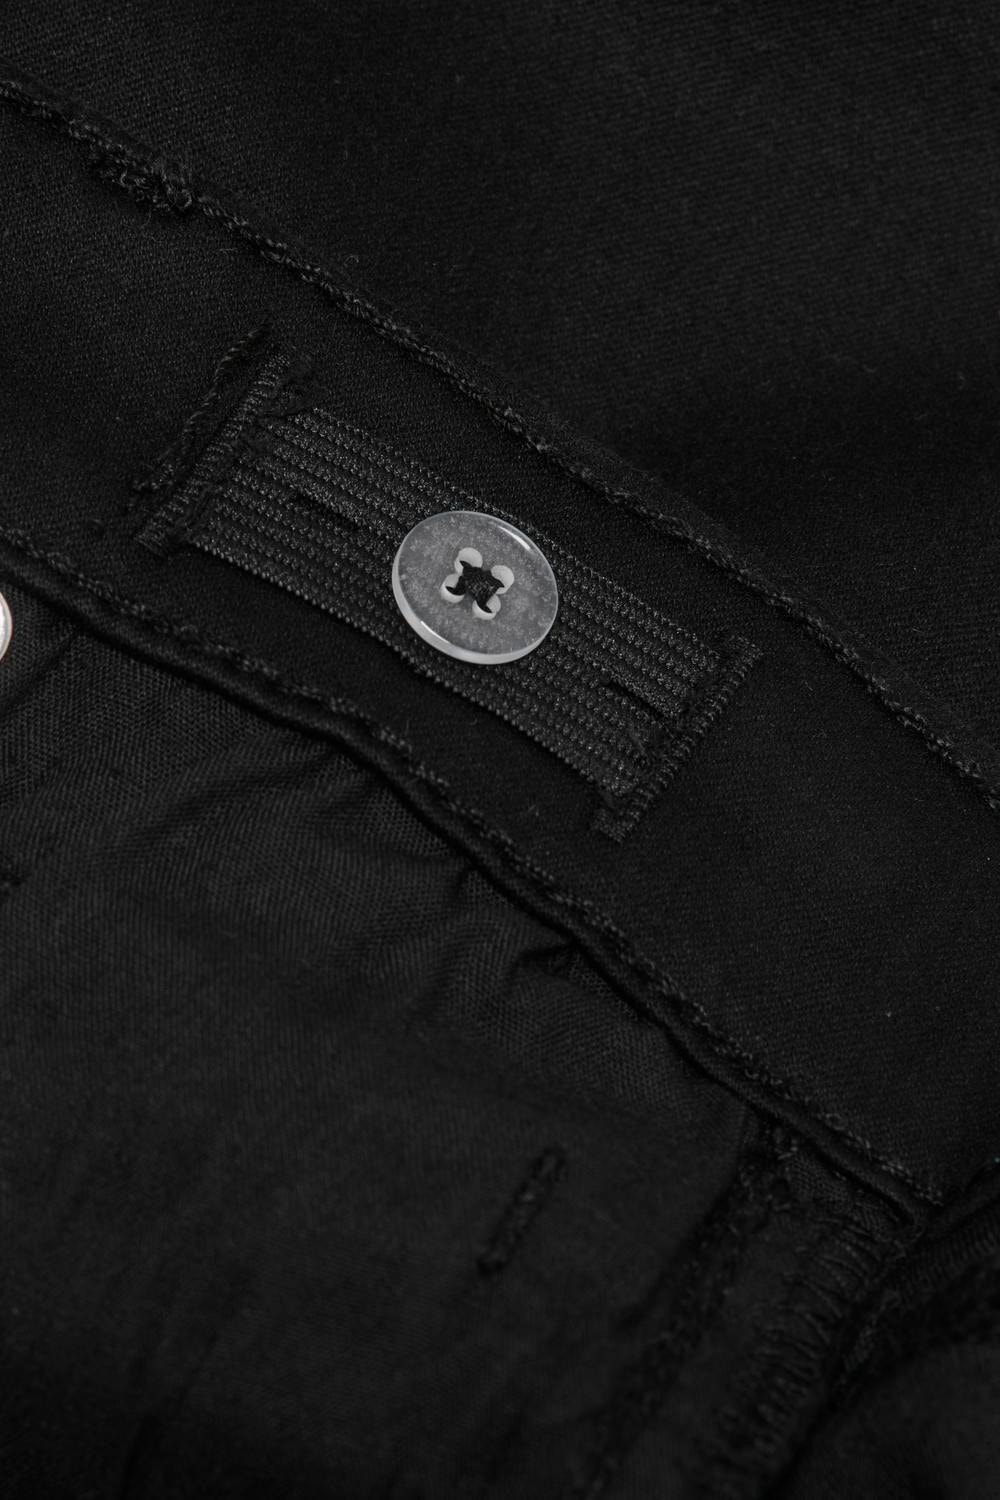 ONLY Ausgestellt Mittlere Taille Jeans -Black Denim - 15297579